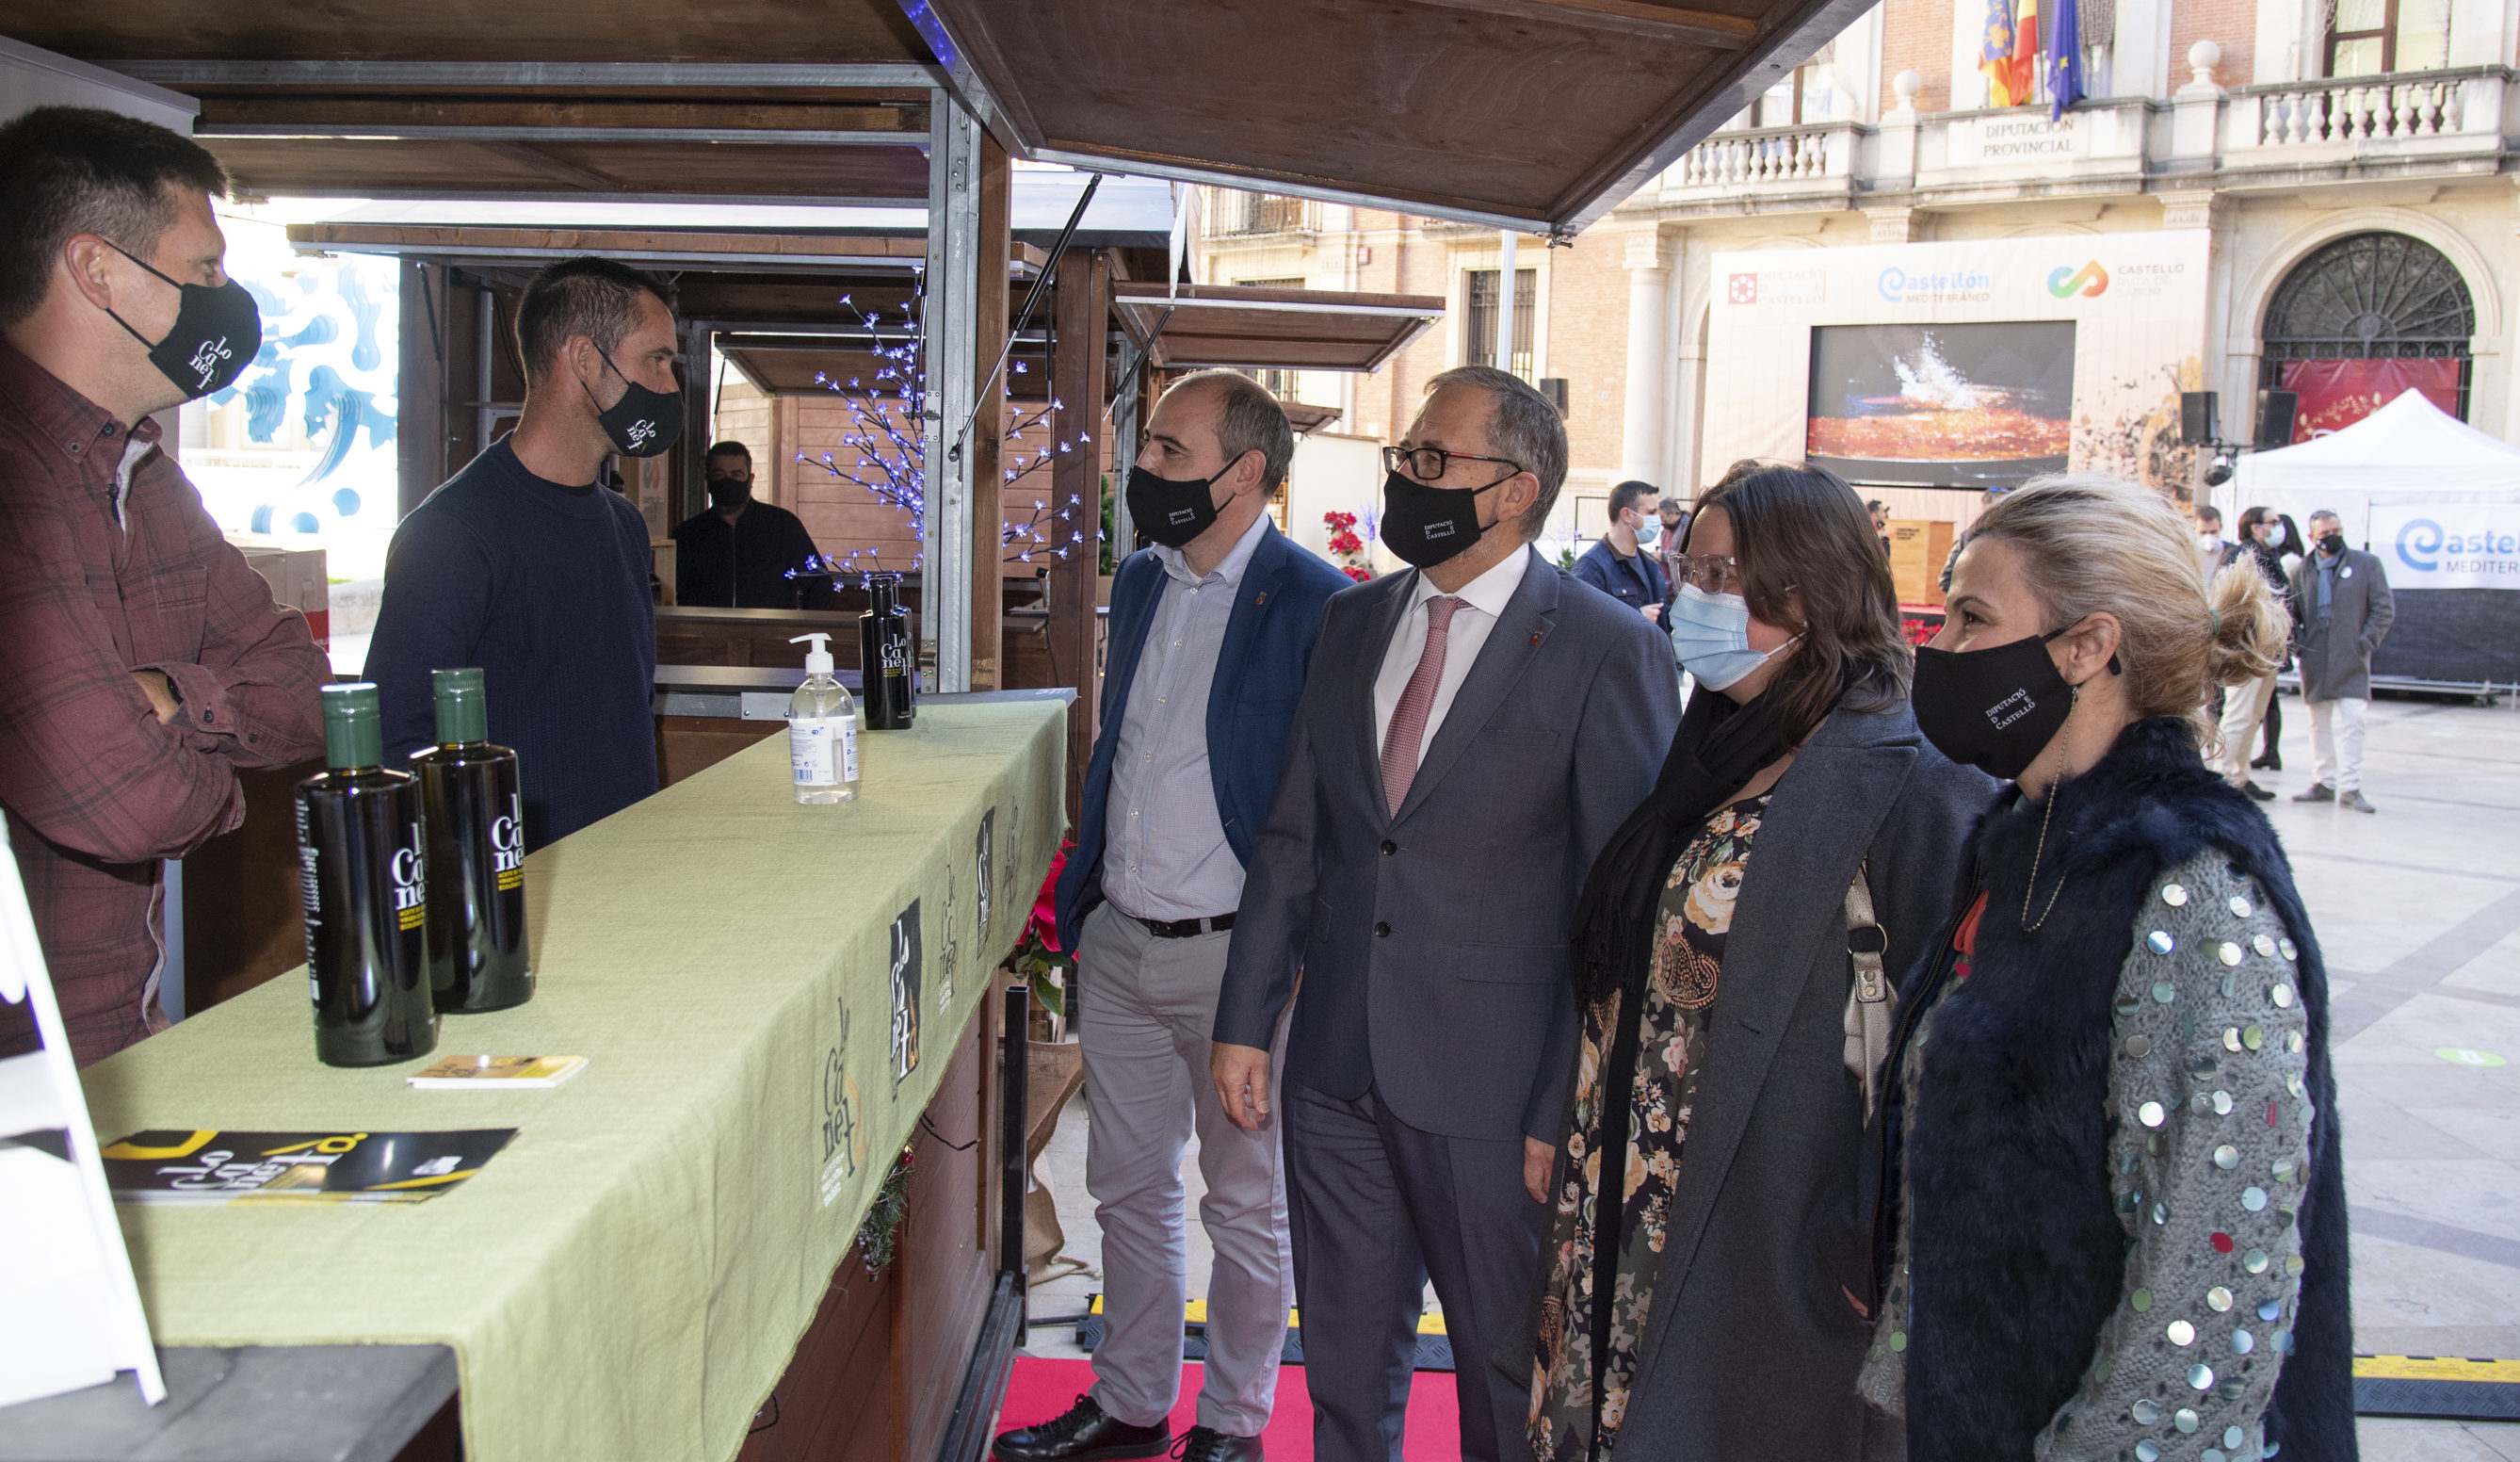 La Diputació redefineix ‘Castelló Ruta de Sabor’ com a reclam turístic gastronòmic nacional i internacional